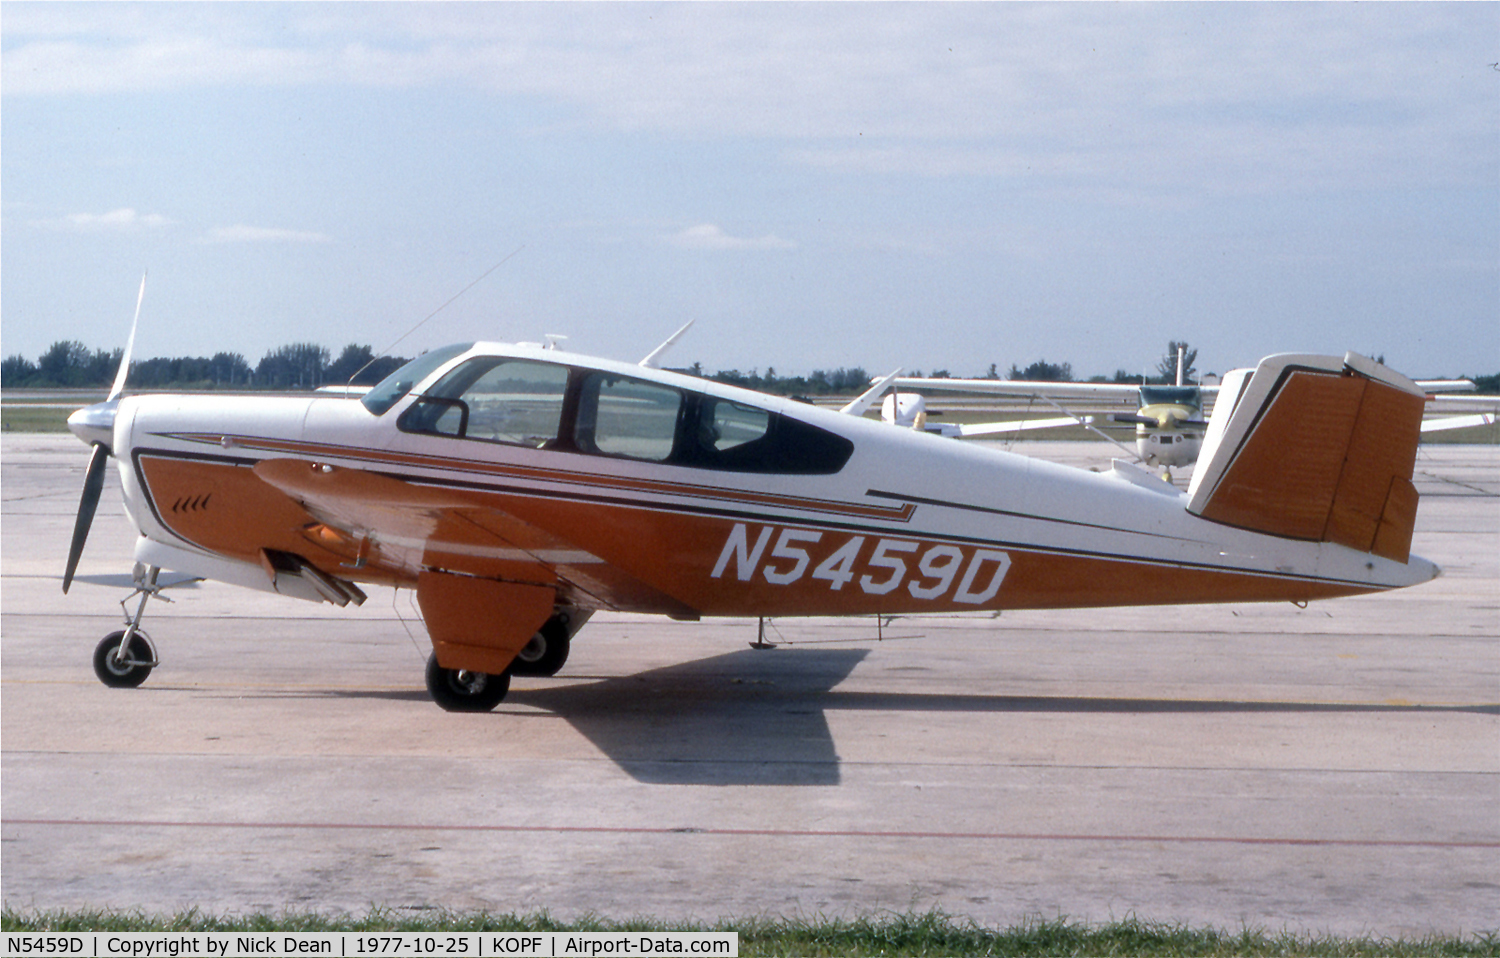 N5459D, Beechcraft H35 C/N D-5030, Currently registeredas N555VB based in Califonia